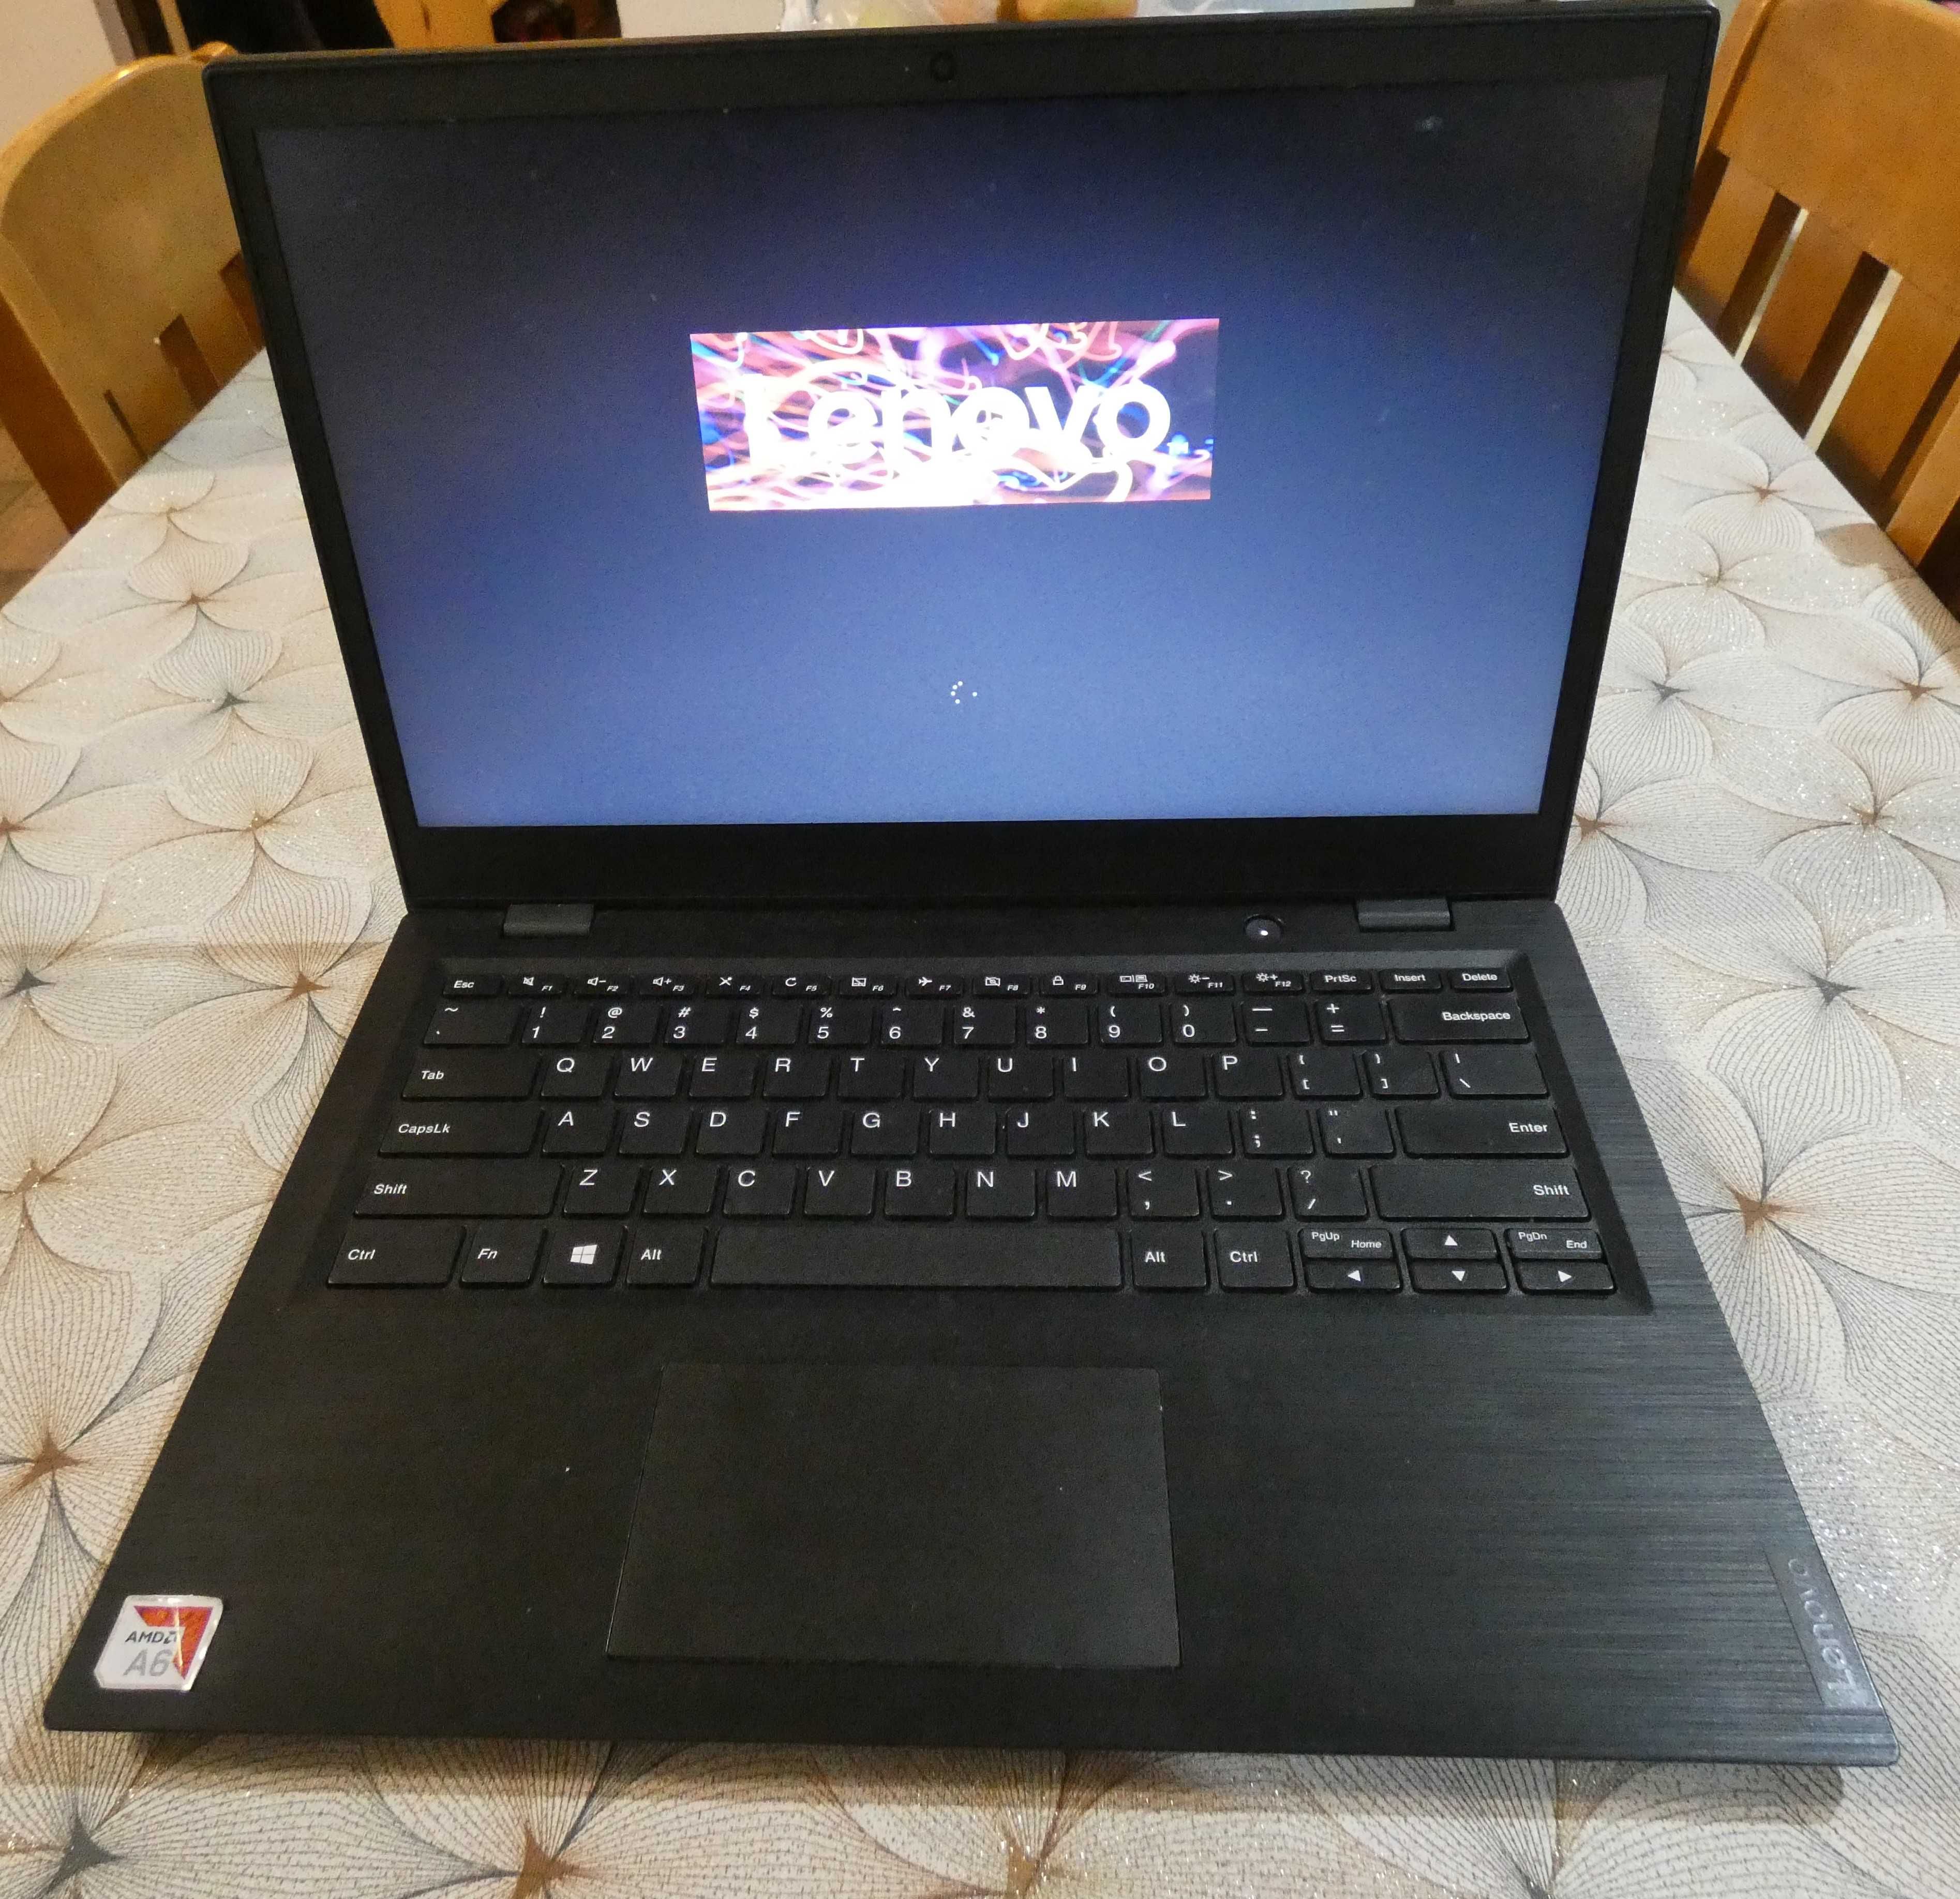 Laptop Lenovo FHD A6-9220C 14"